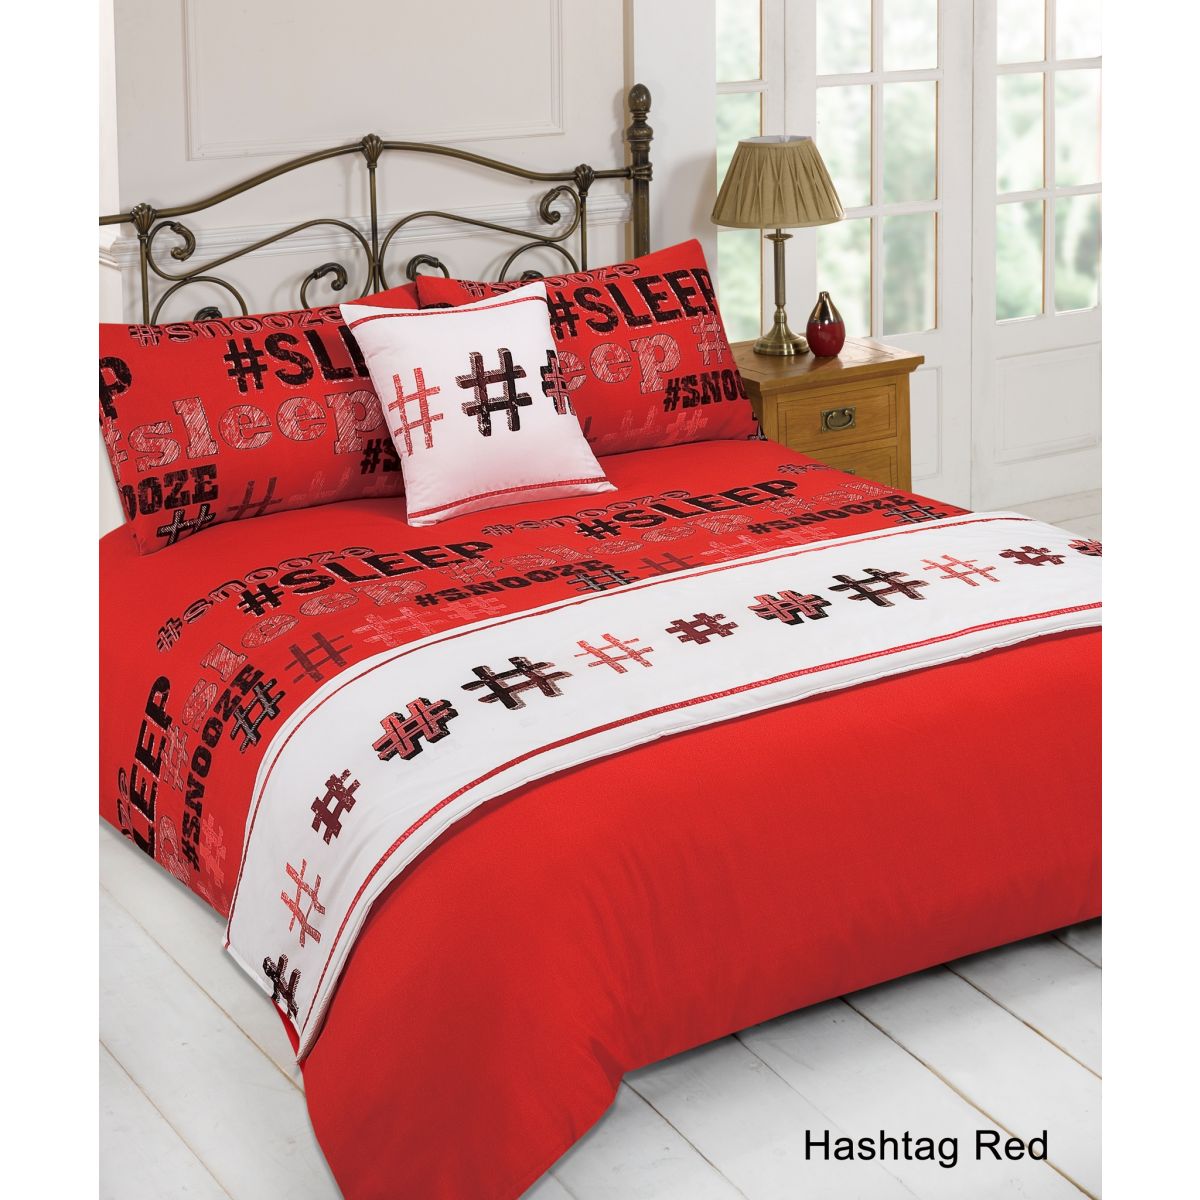 Dreamscene Hashtag Bed in a Bag Bedding Set, Red - Super King